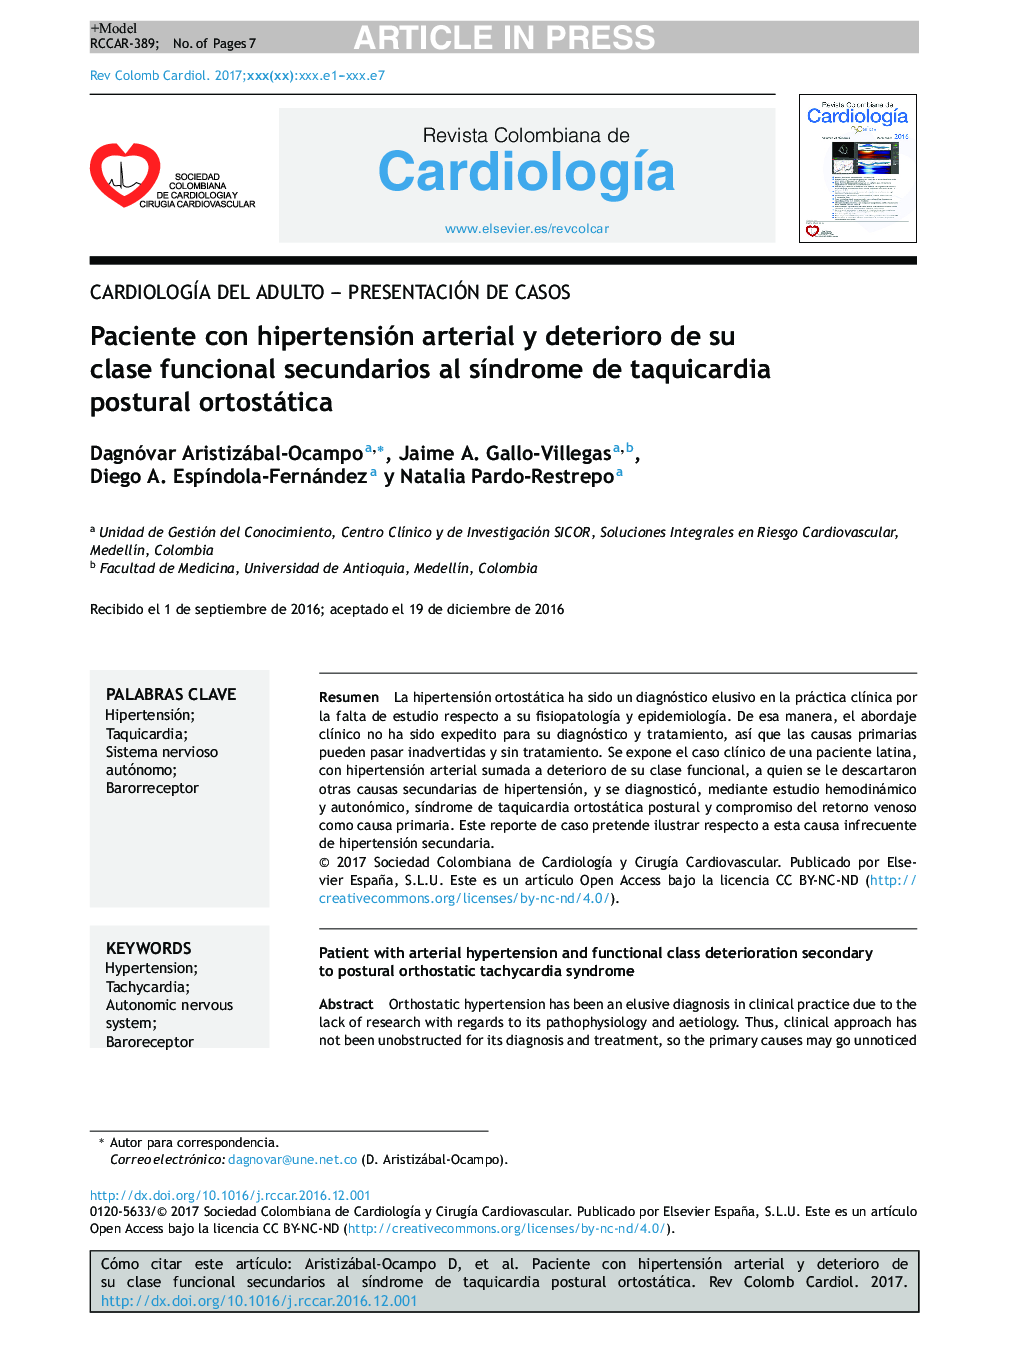 Paciente con hipertensión arterial y deterioro de su clase funcional secundarios al sÃ­ndrome de taquicardia postural ortostática